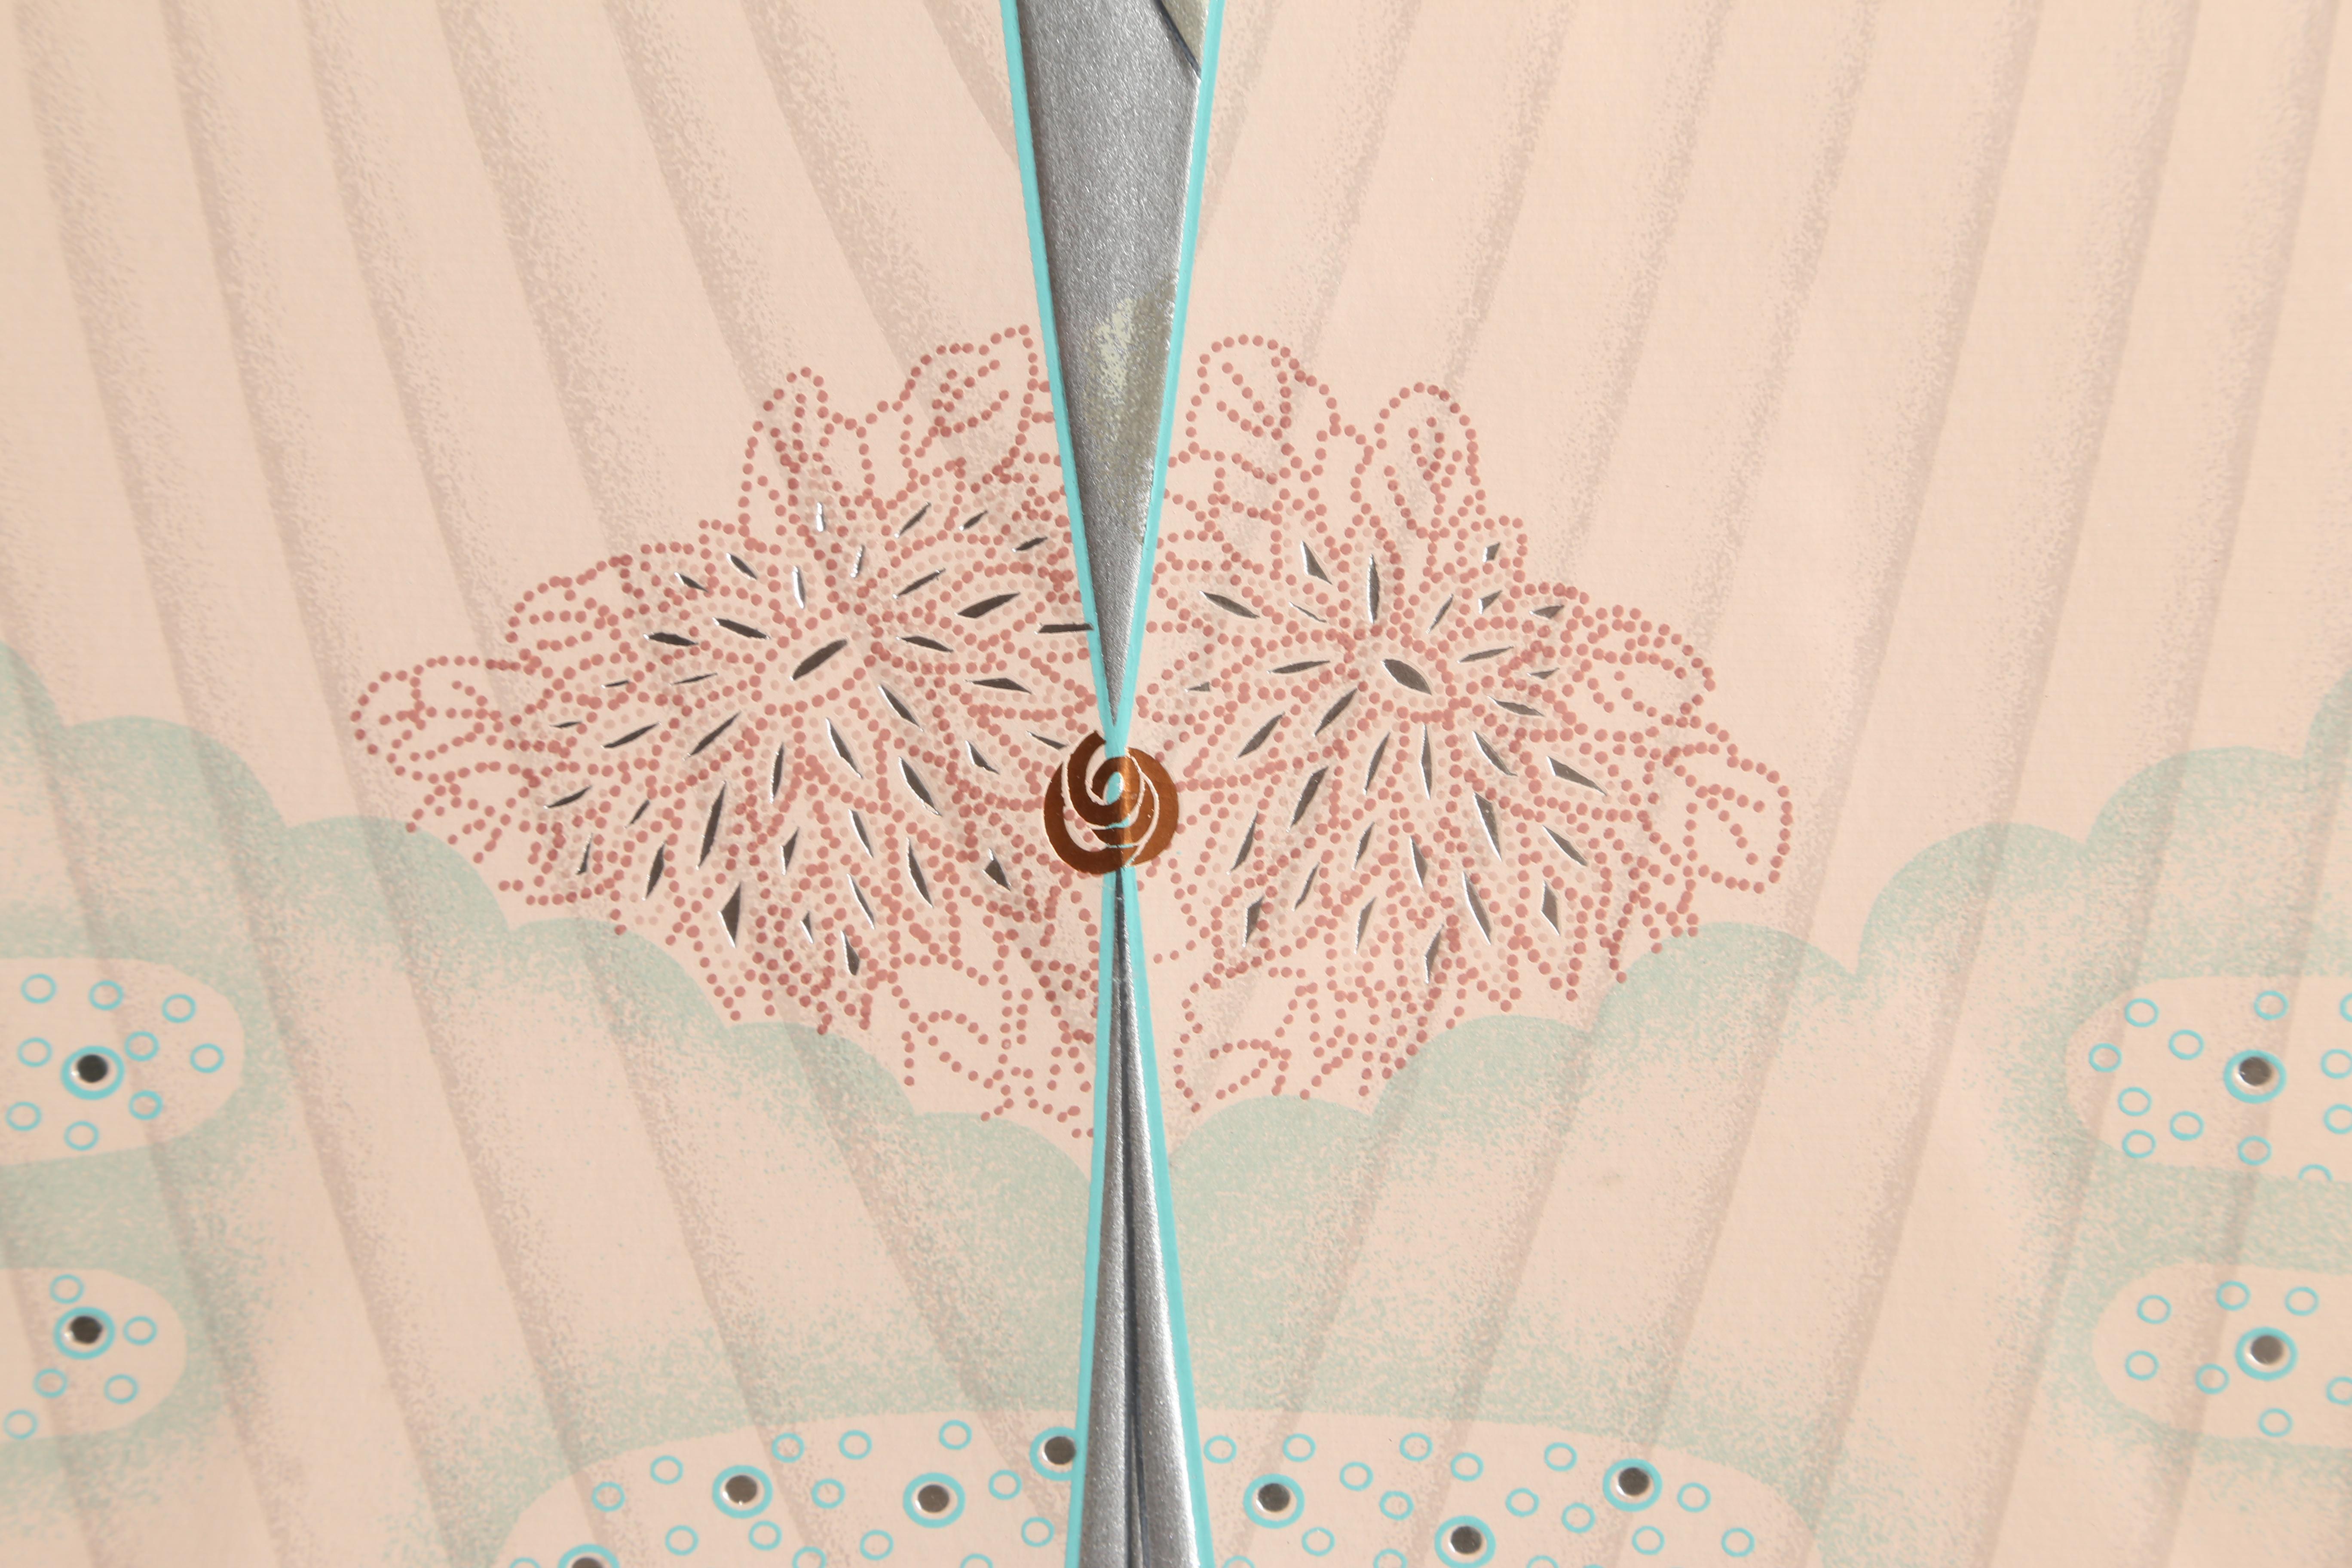 Angel Flügel mit Engelsflügel (Art déco), Print, von Lillian Shao